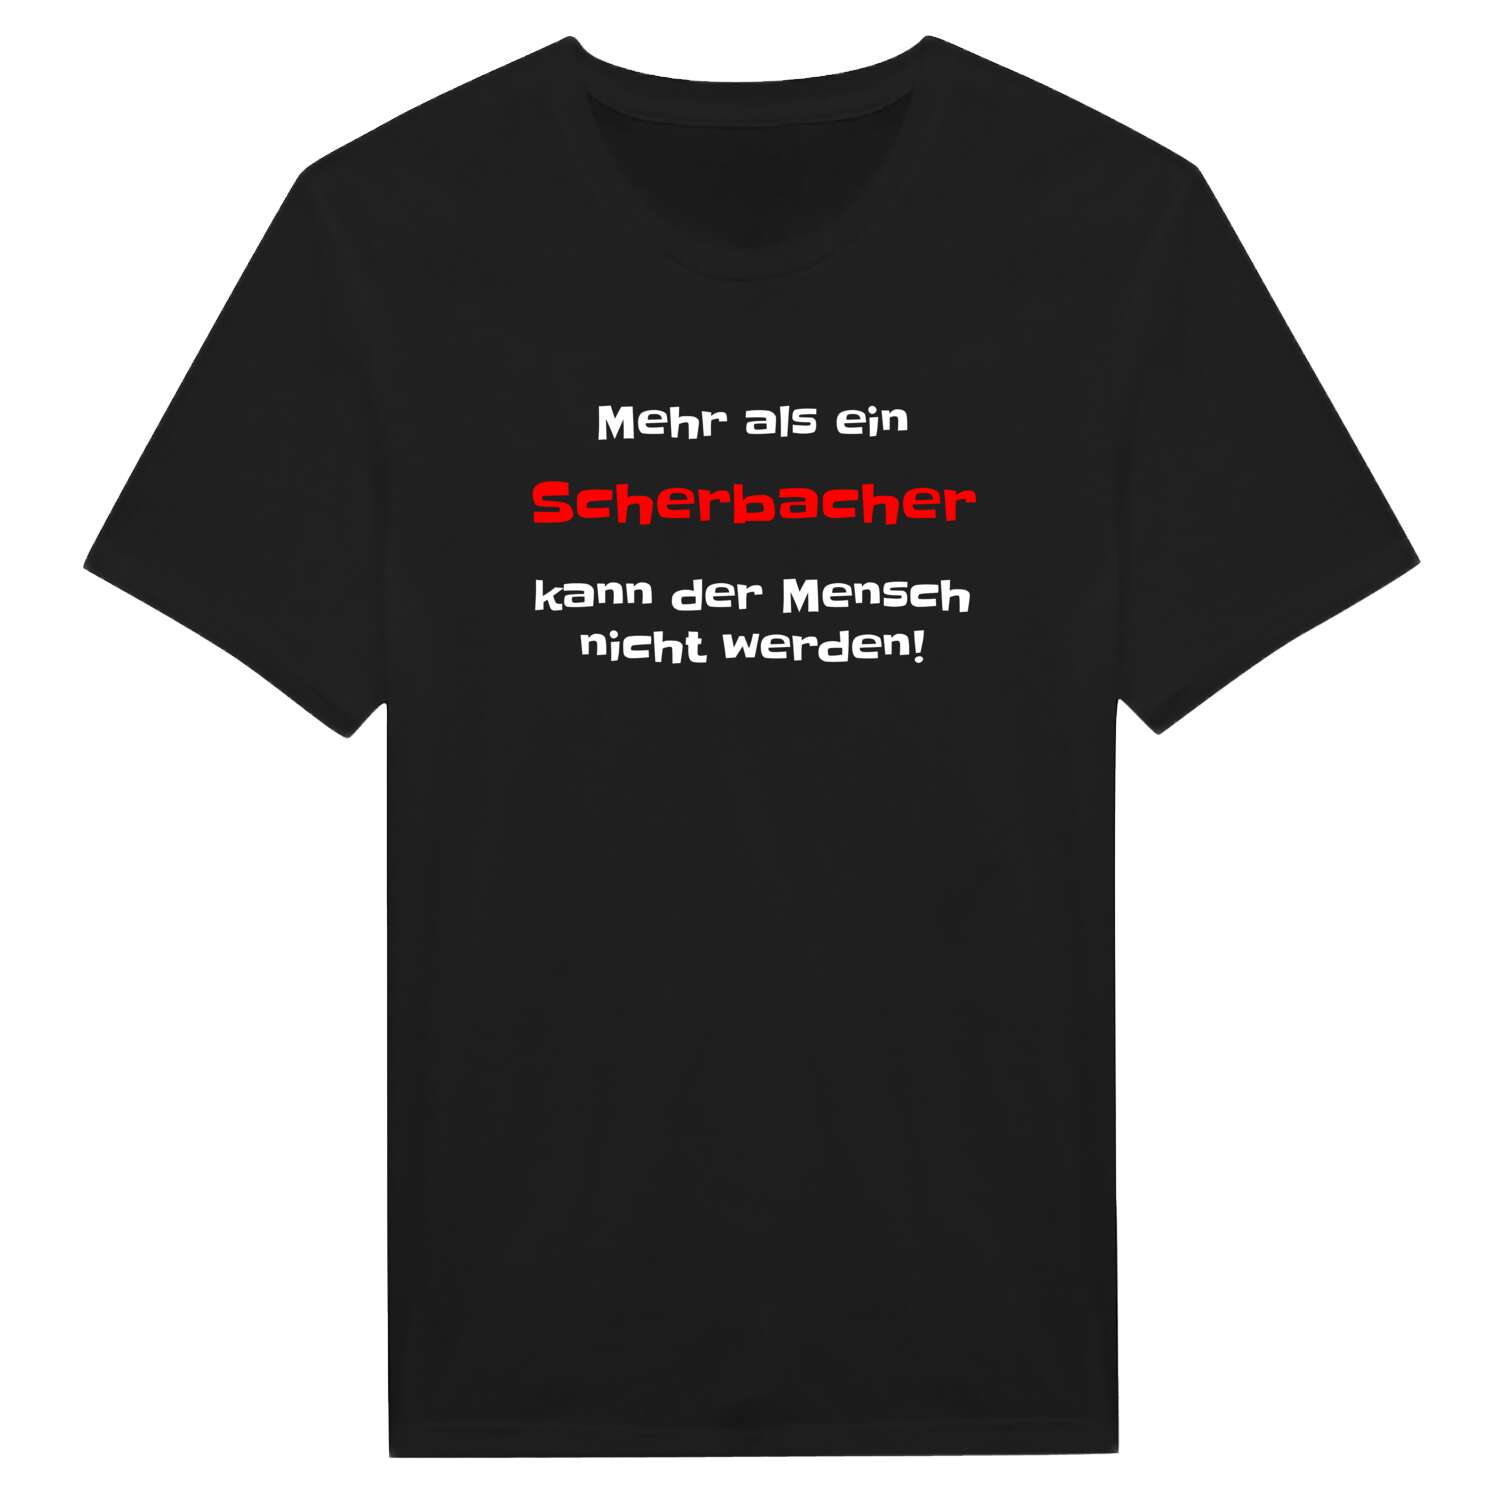 Scherbach T-Shirt »Mehr als ein«